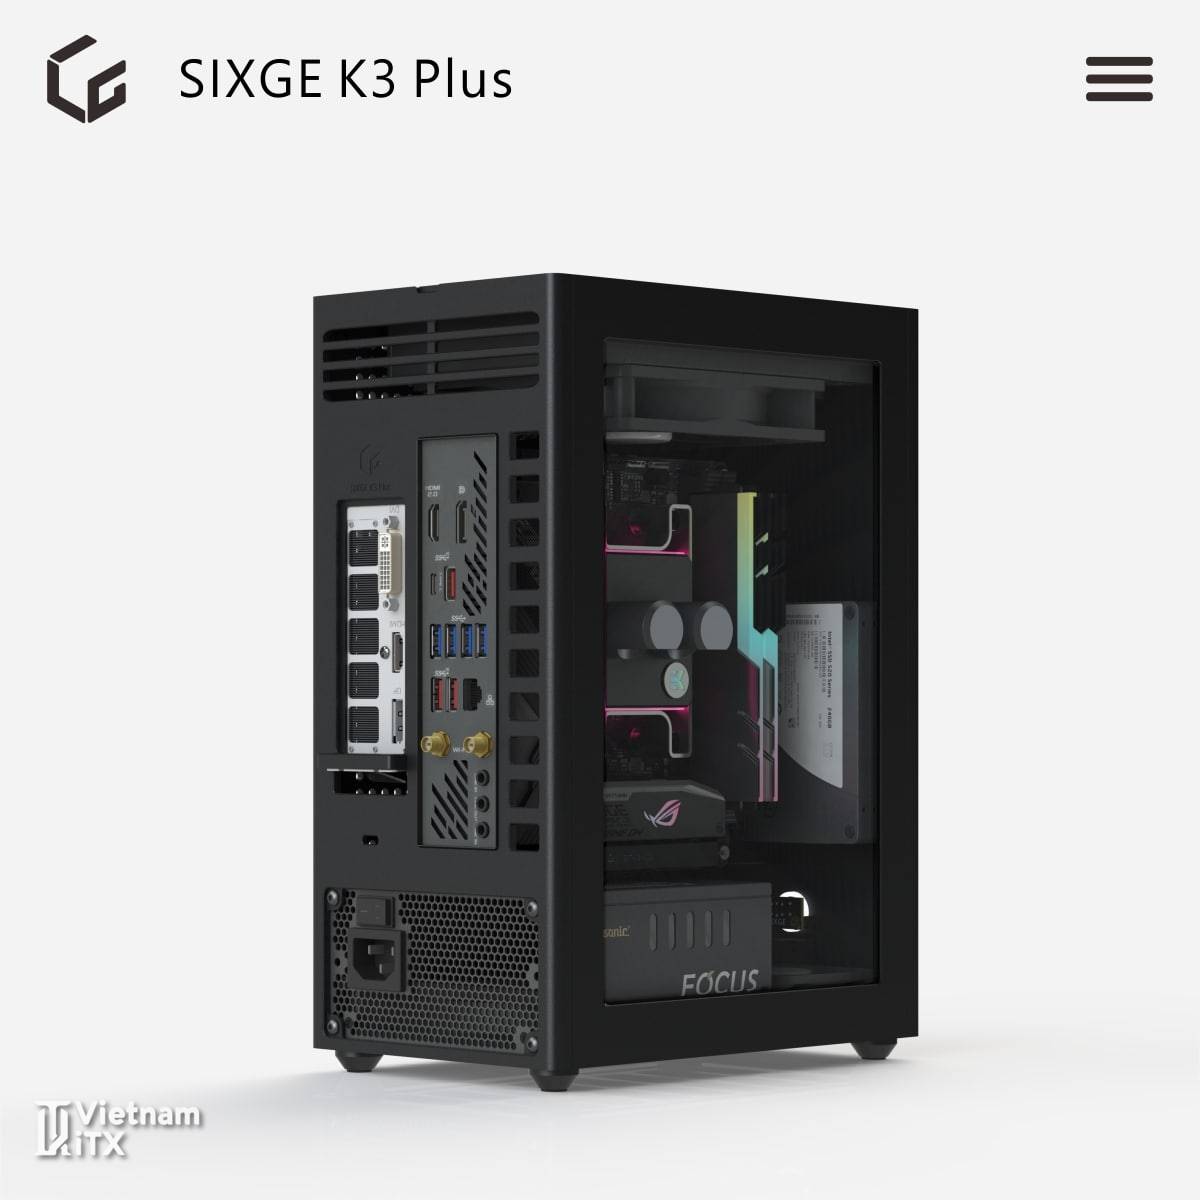 Sixge K3 Plus phiên bản nâng cấp v3.0 tới từ dòng vỏ máy itx K3S (1).jpg